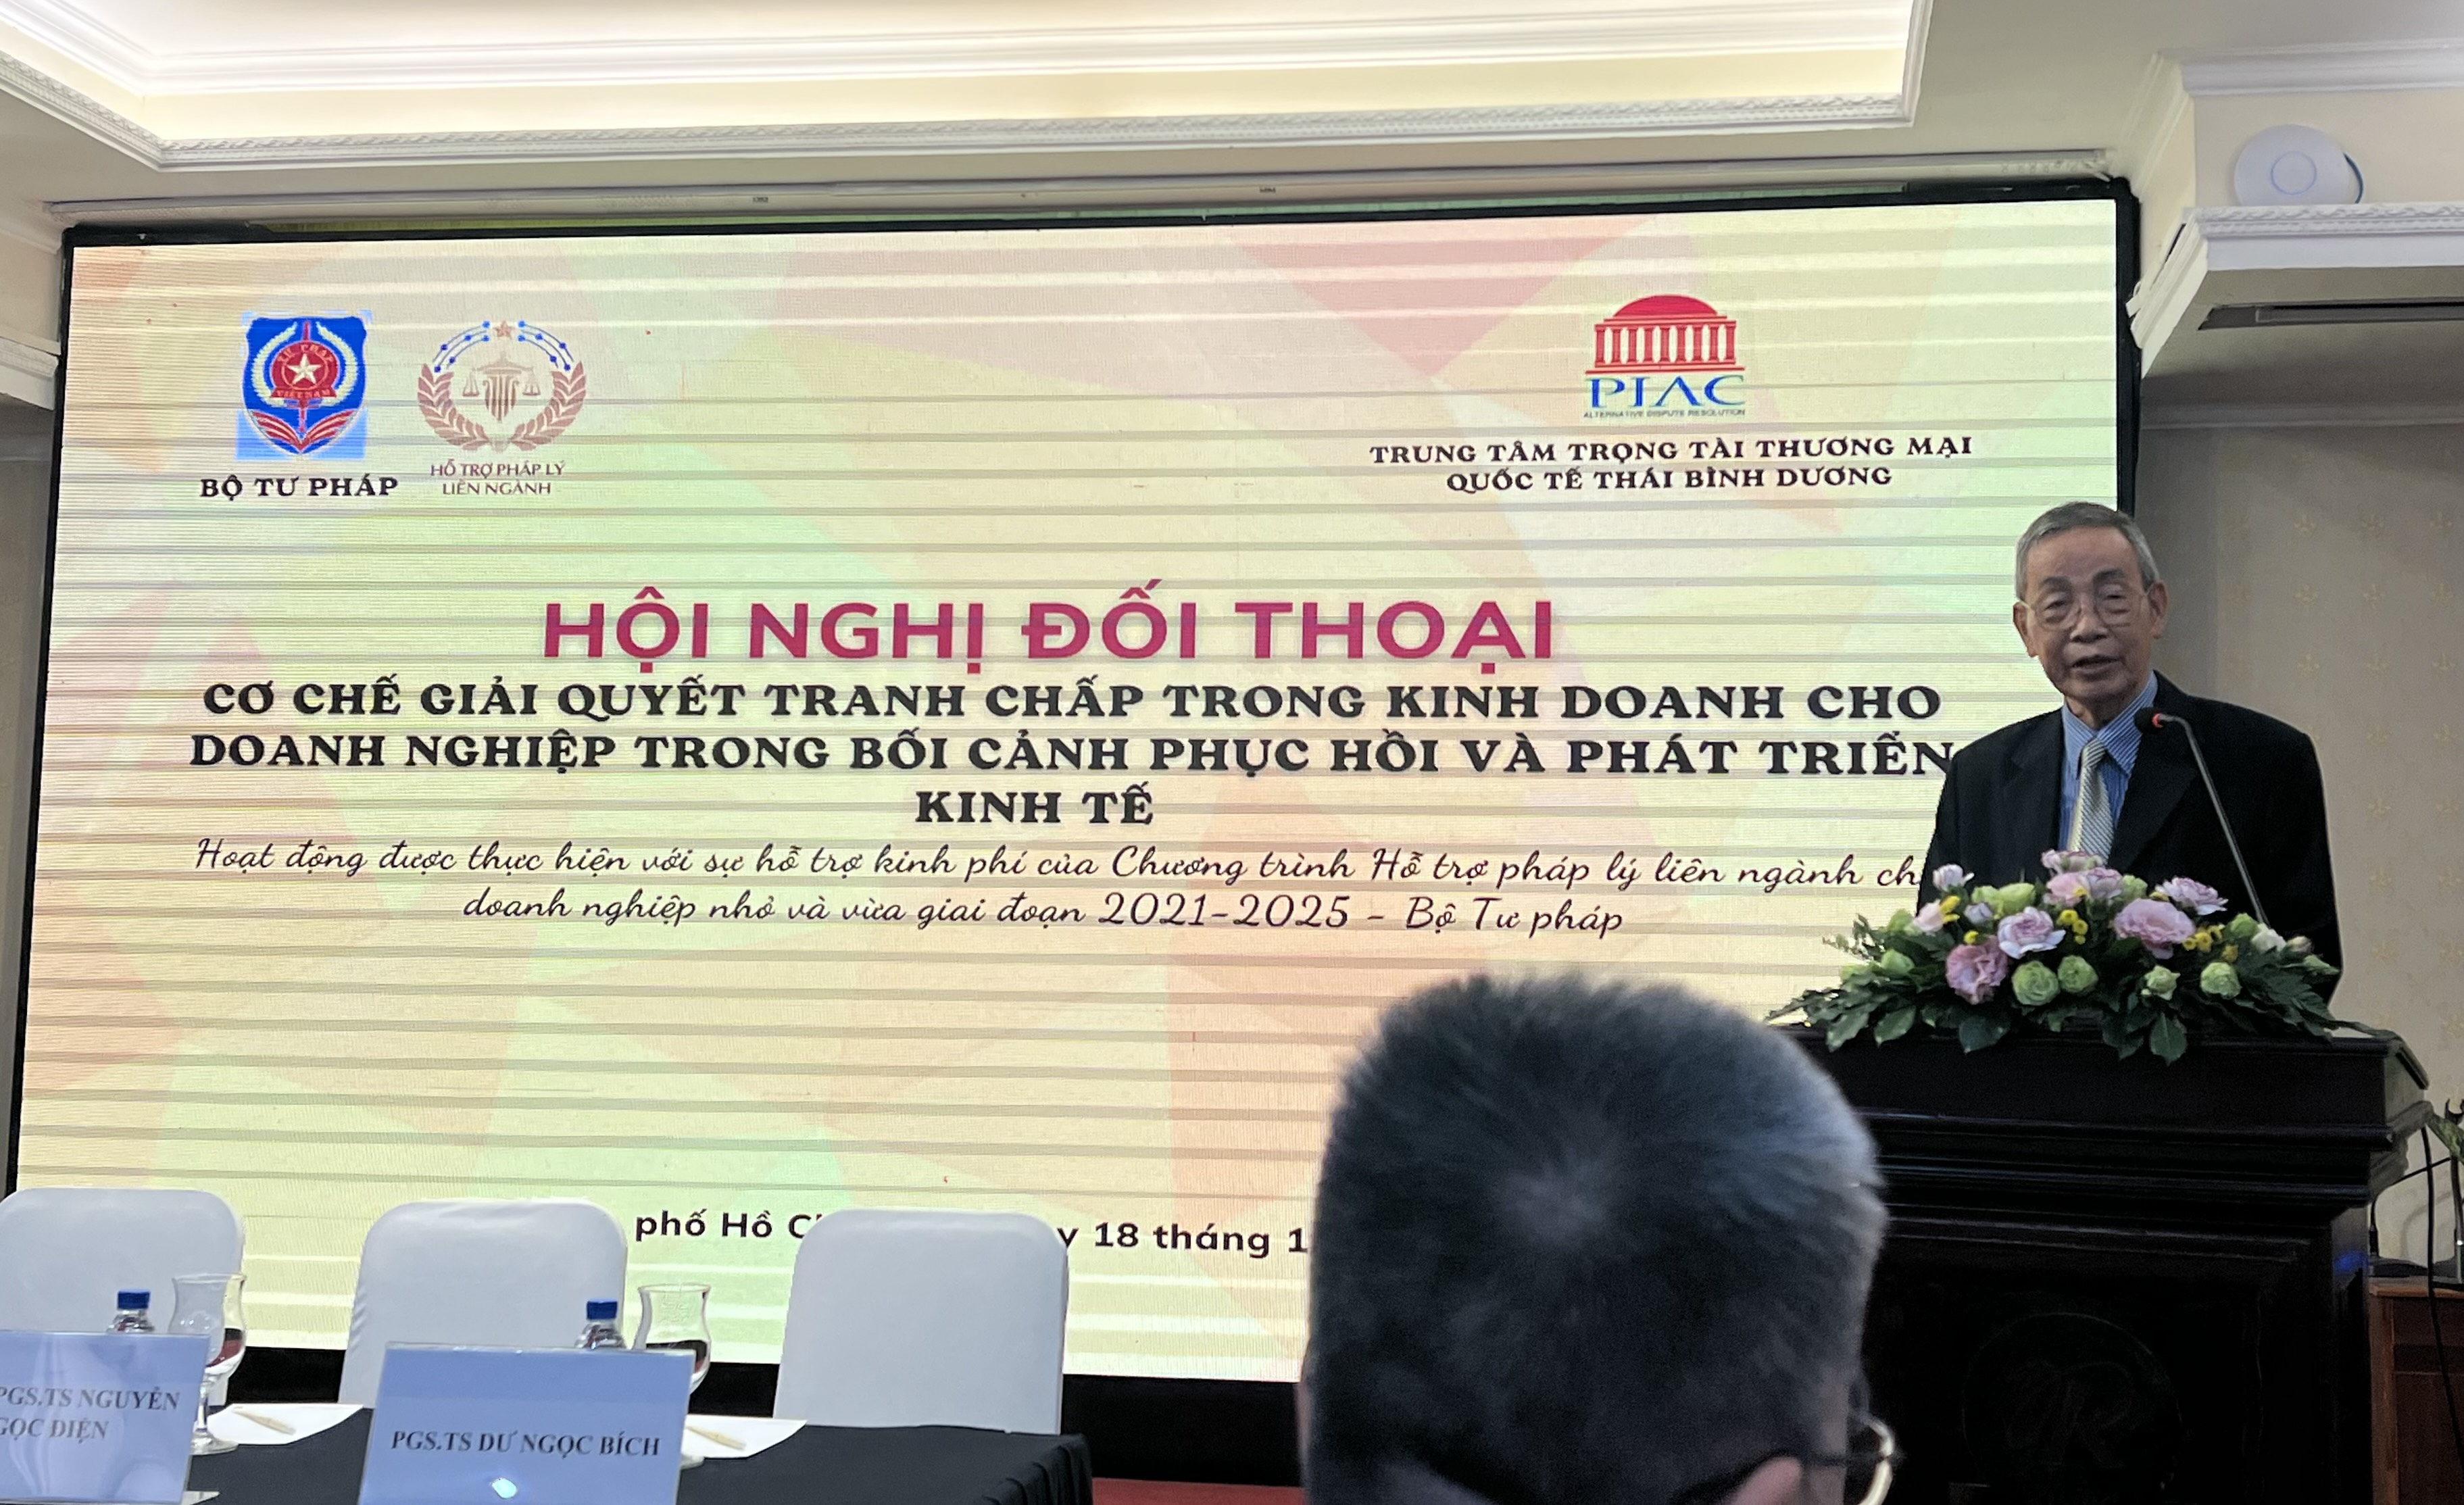 Luật sư Nguyễn Đăng Trừng - Chủ tịch, thành viên sáng lập Trung tâm trọng tài thương mại quốc tế Thái Bình Dương (PIAC)